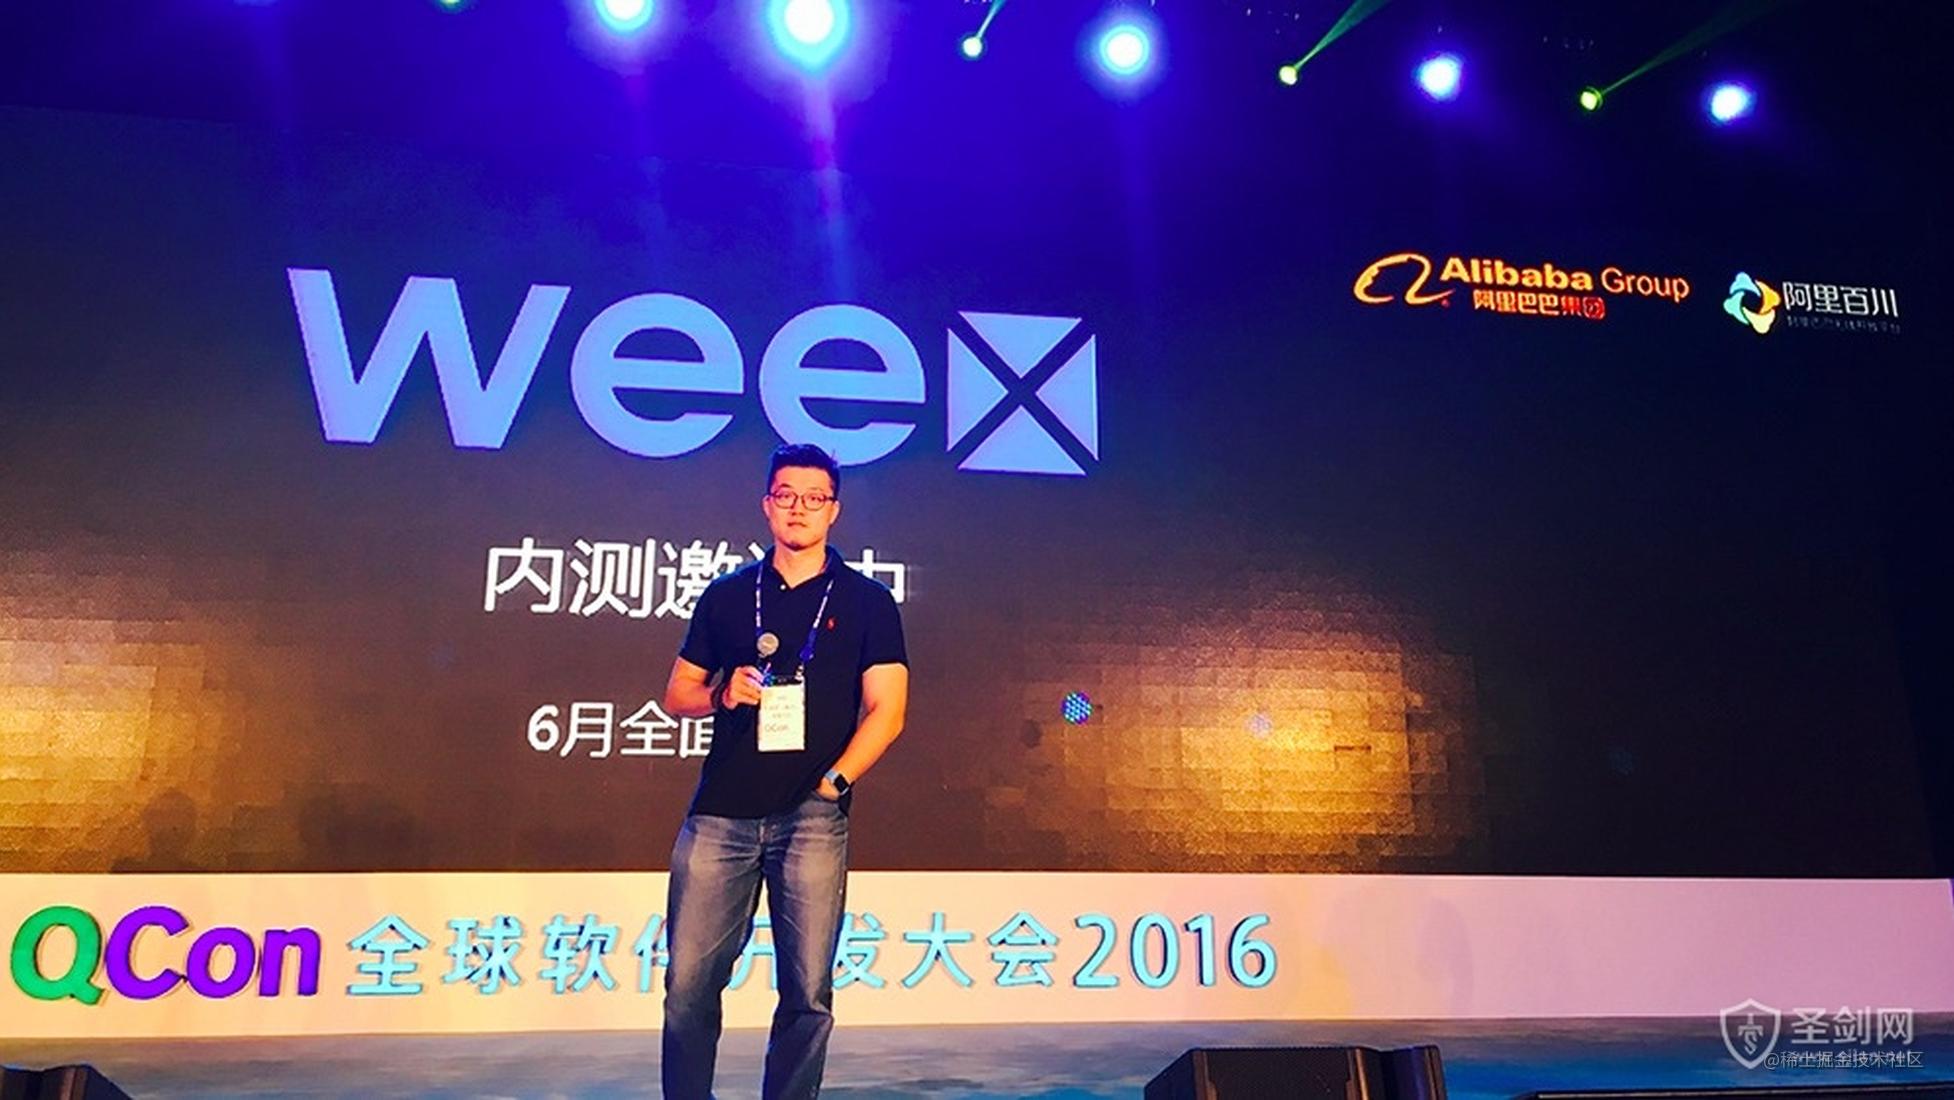 Alibaba 的 weex 完全开放 Github 仓库访问权限，有兴趣的快去 fork